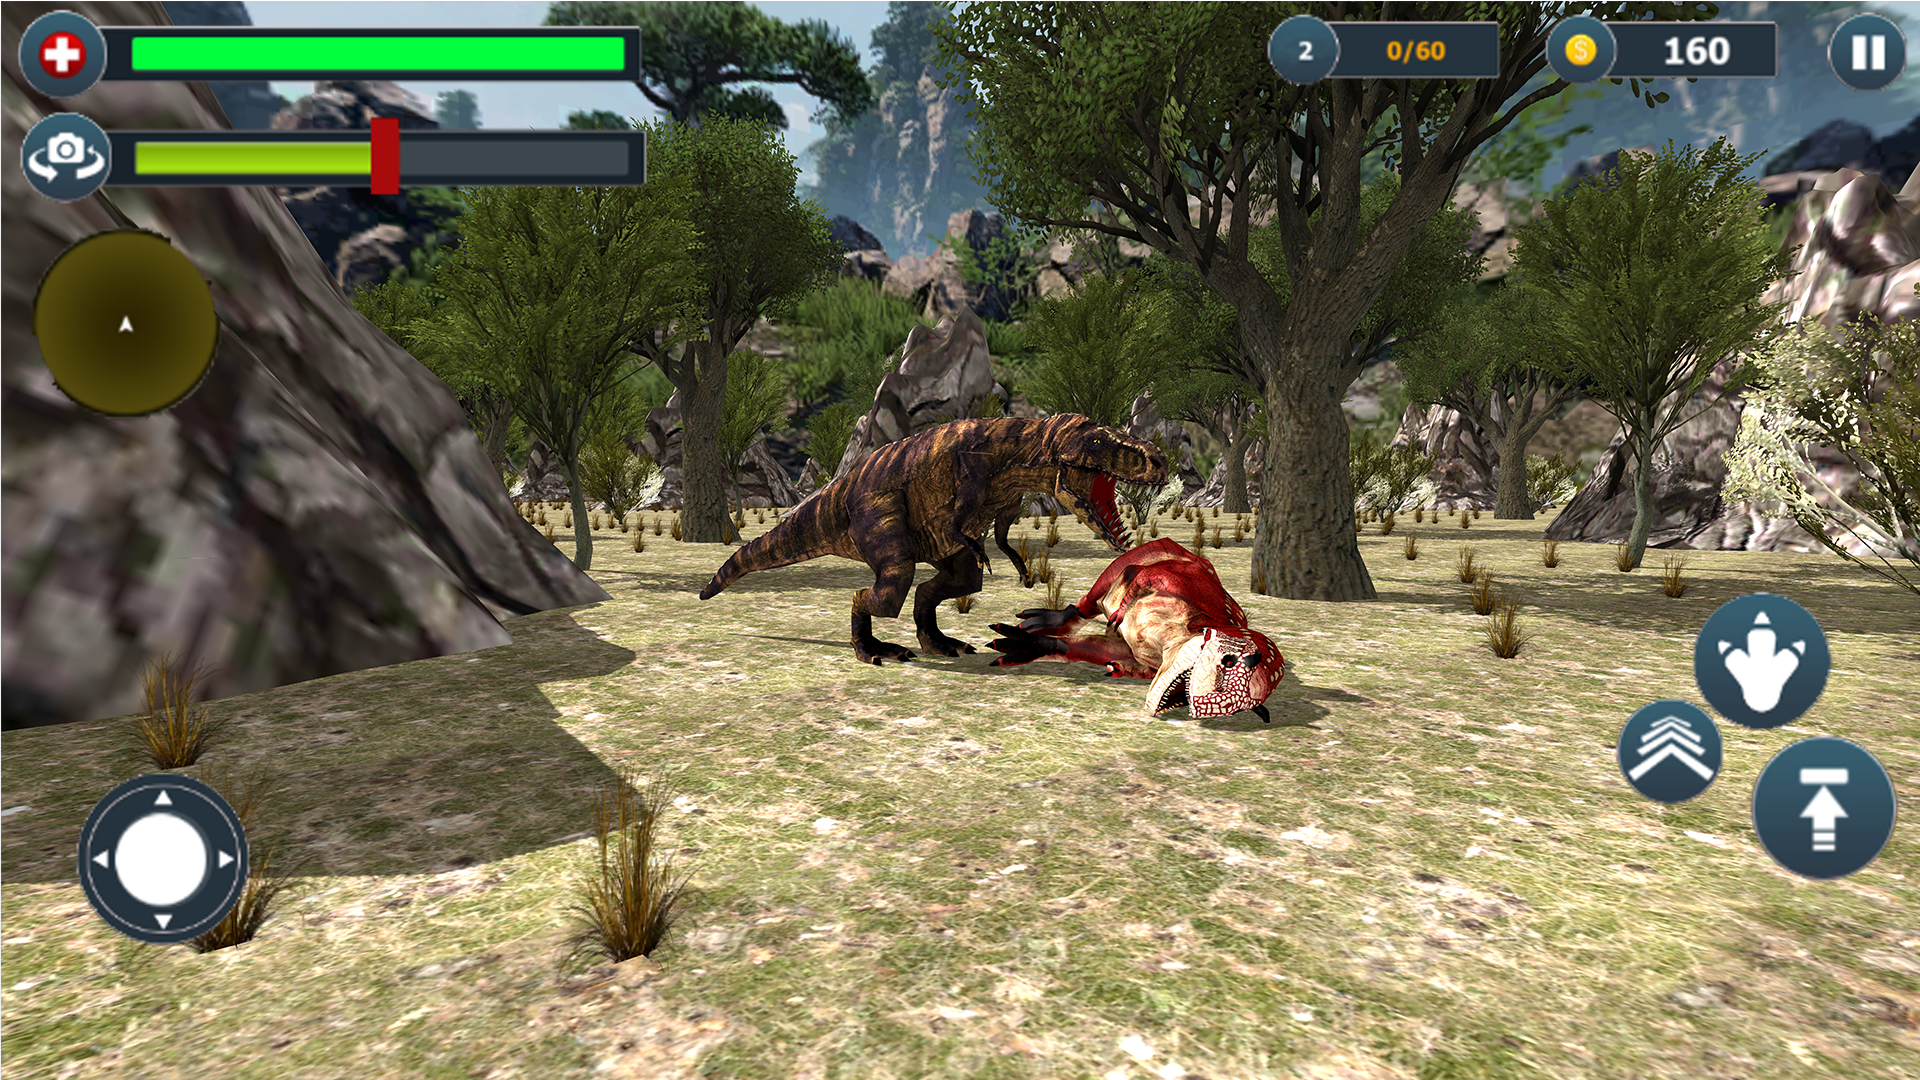 download ultimate dinosaur simulator free